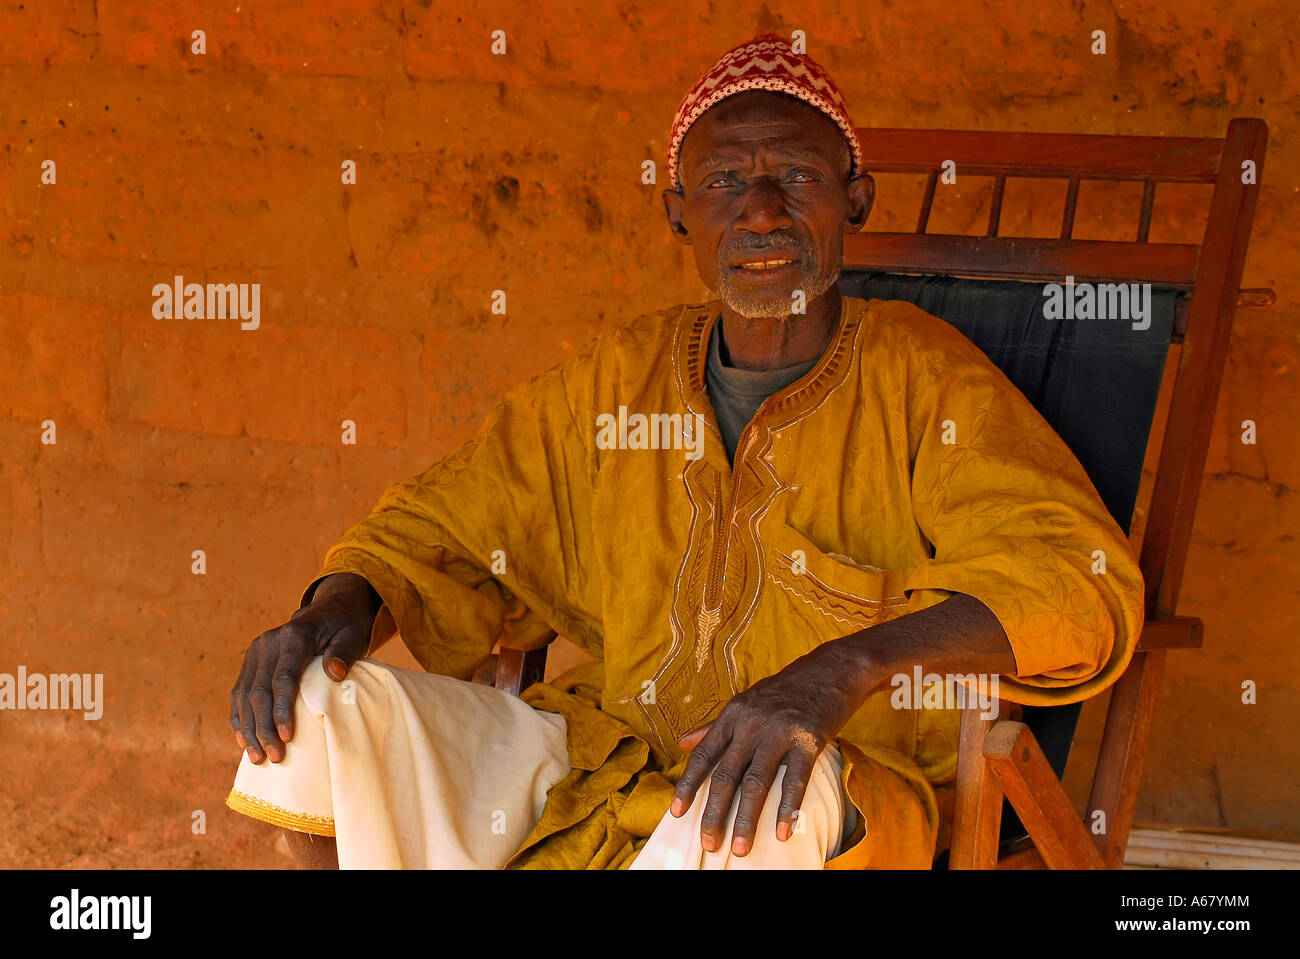 Ancien du village de la communauté villageoise de tumani tenda, Gambie, Afrique Banque D'Images